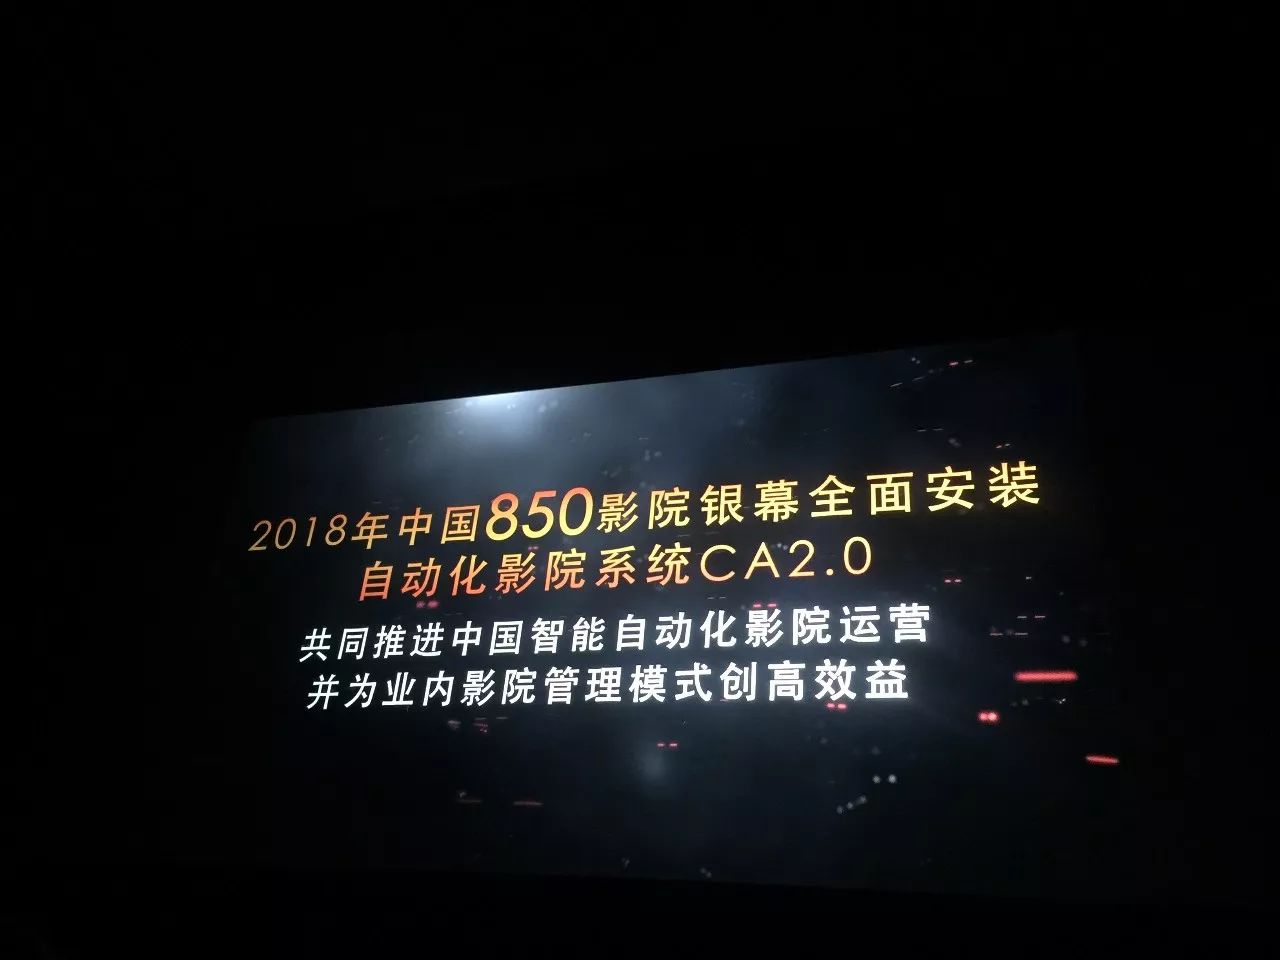 未来影院科技里程碑 Gdc自动化影院系统2 0将全面入驻中国影院